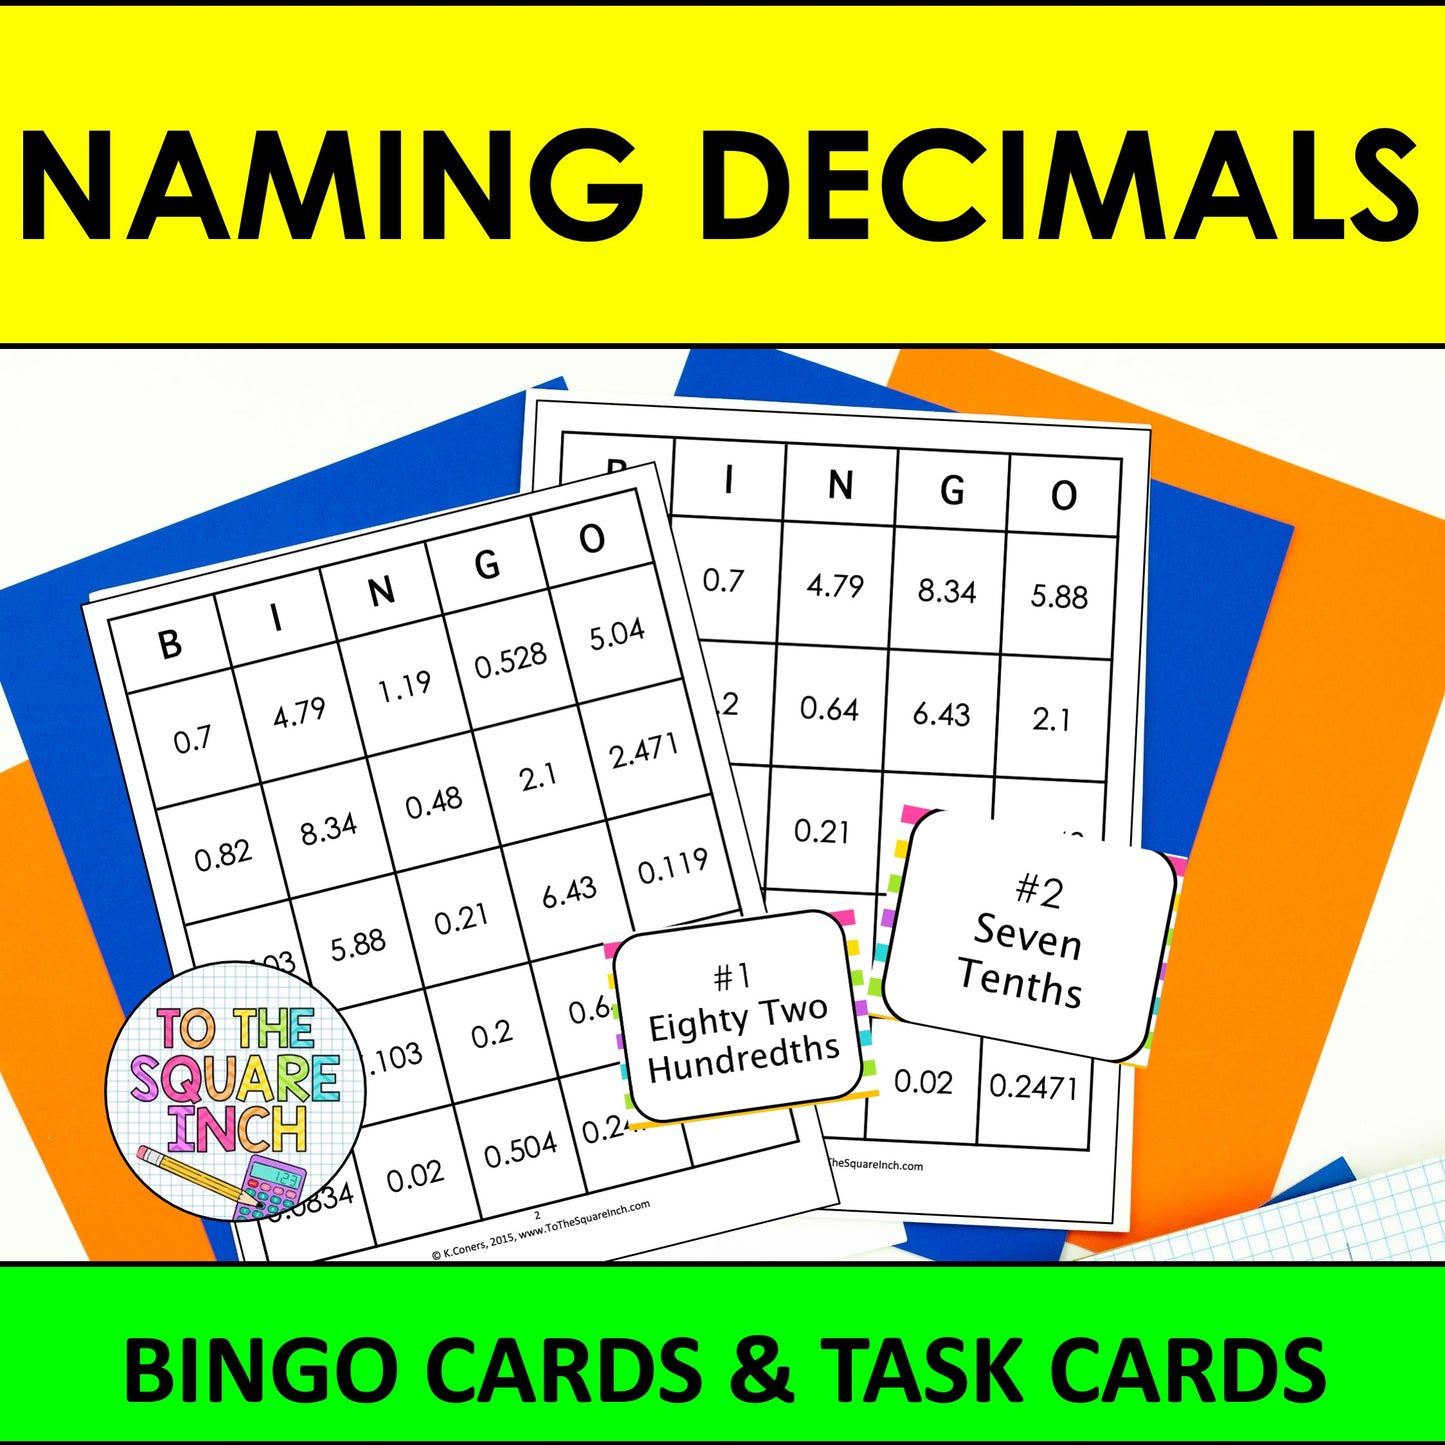 Naming Decimals Bingo